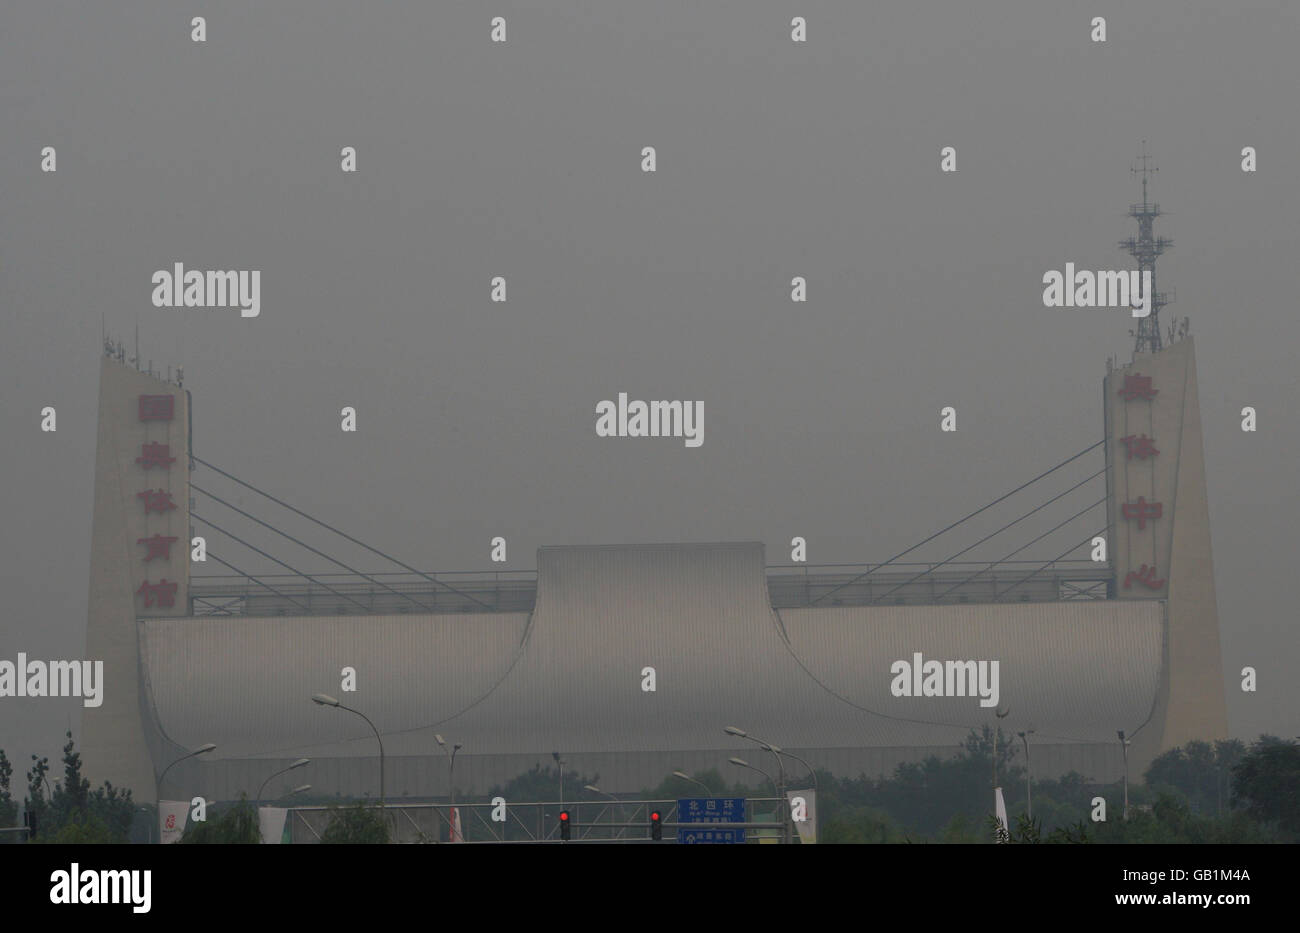 Olimpiadi - Giochi Olimpici di Pechino 2008. Lo smog è sospeso sullo Yingdon Natatorium del National Olympic Sports Center di Pechino, Cina. Foto Stock